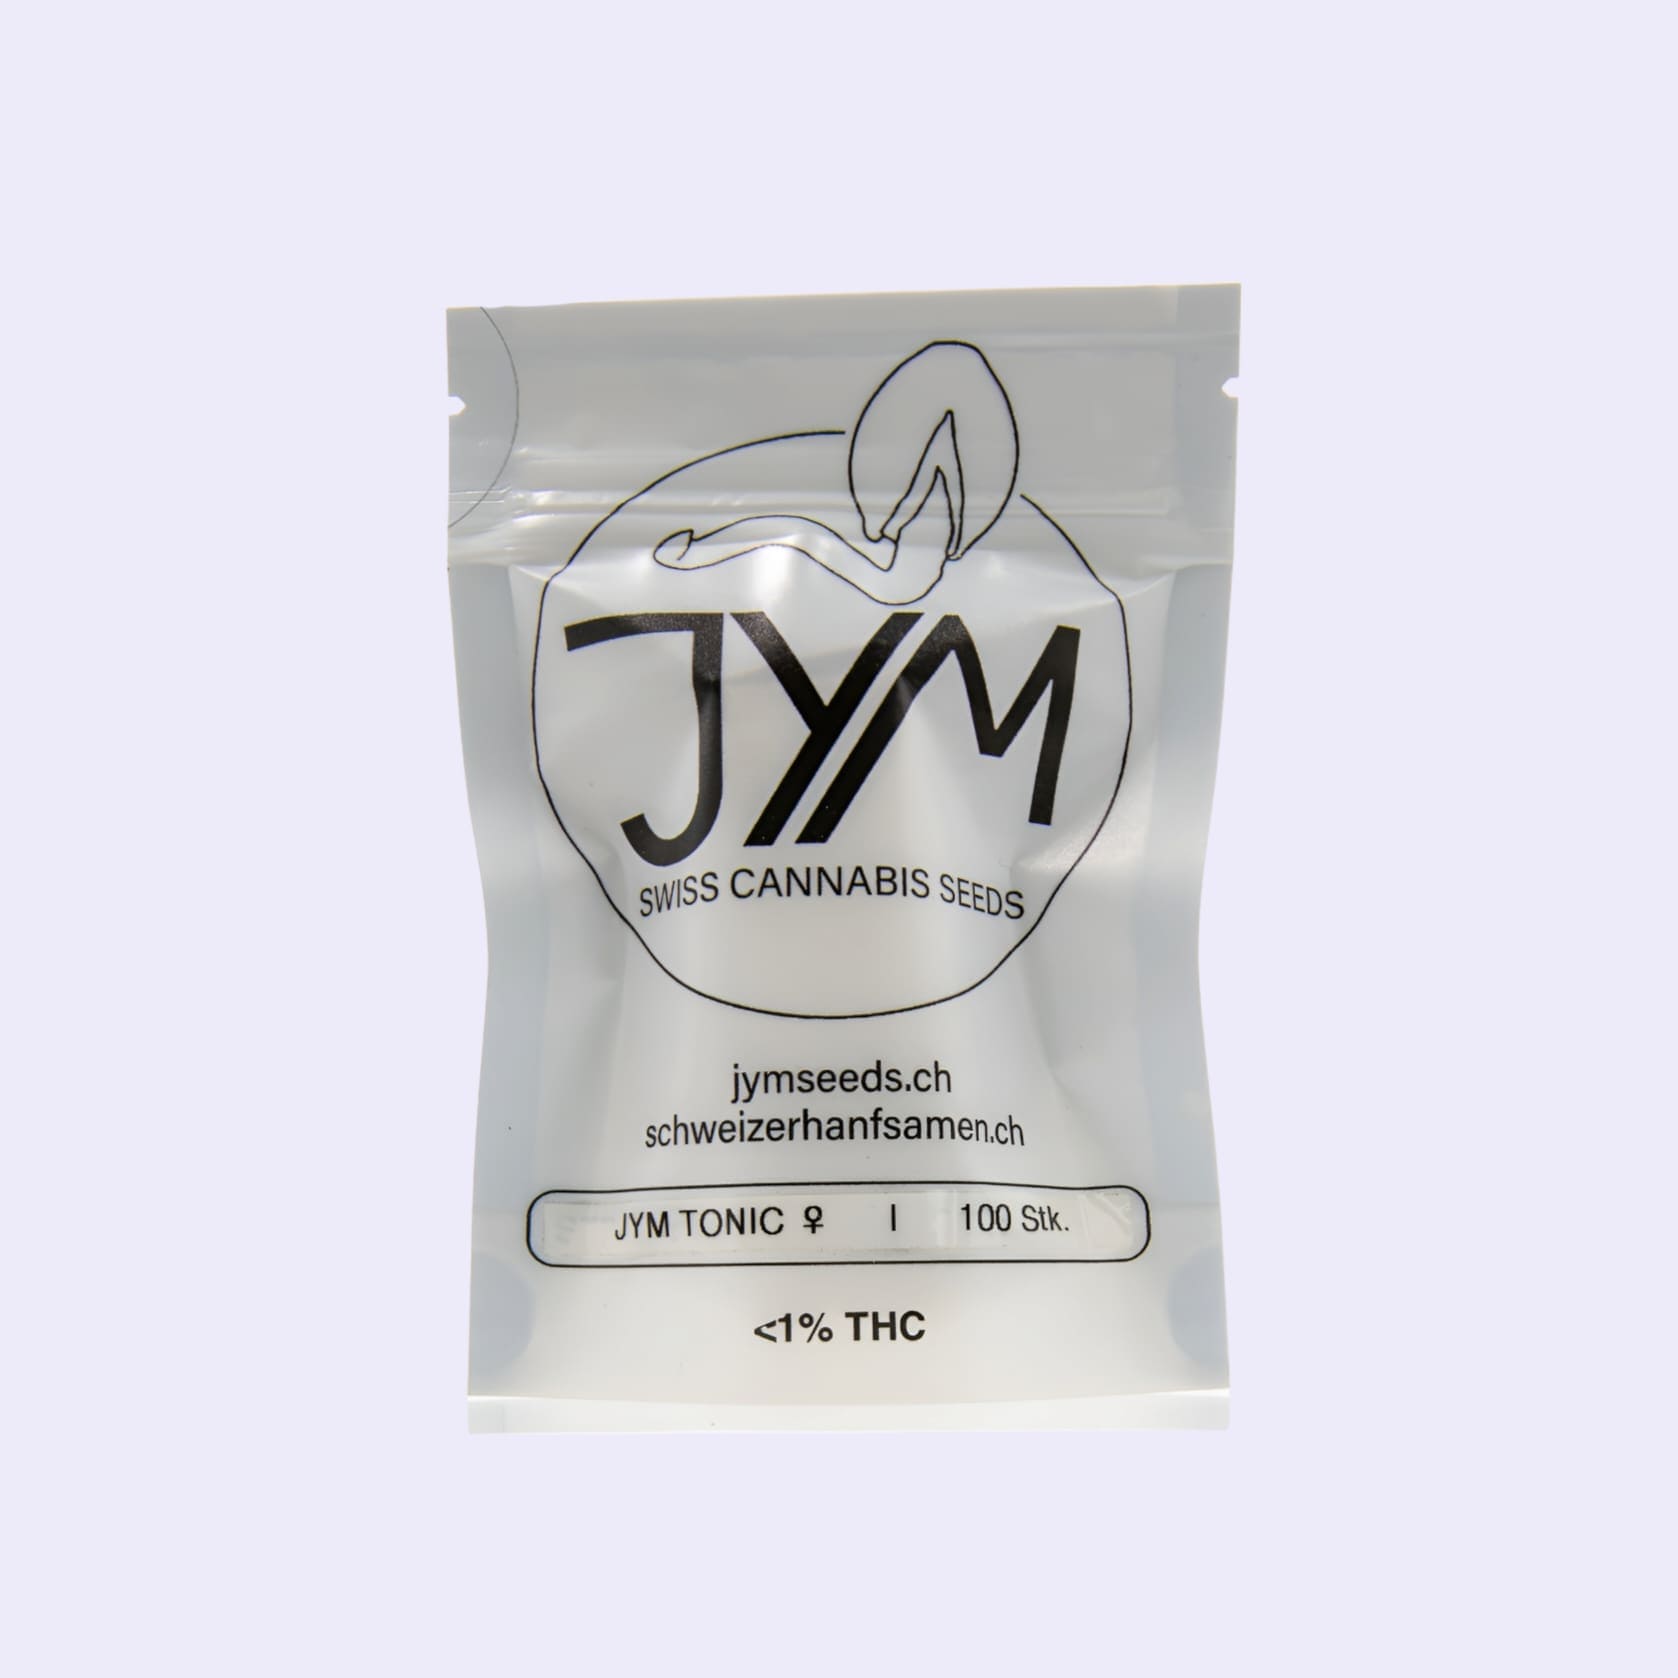 Dieses Bild zeigt die CBD Hanfsamen Jym Tonic 100er Bulk von der Firma JYM's